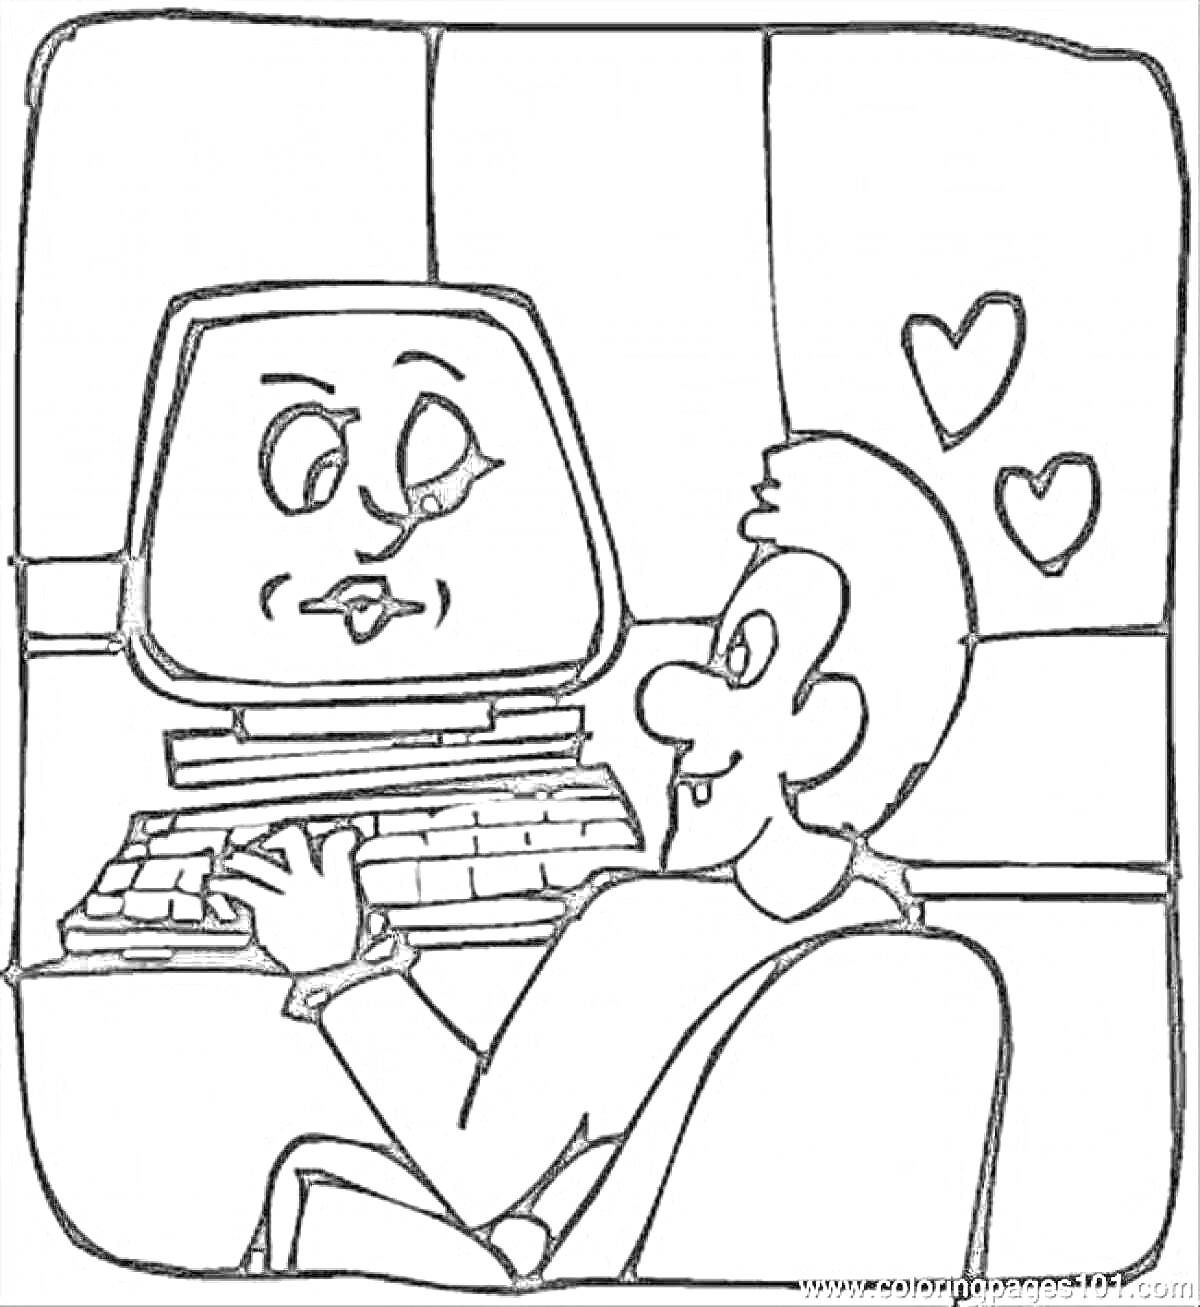 Программист сидит за компьютером с экраном в виде лица, вокруг летят сердечки